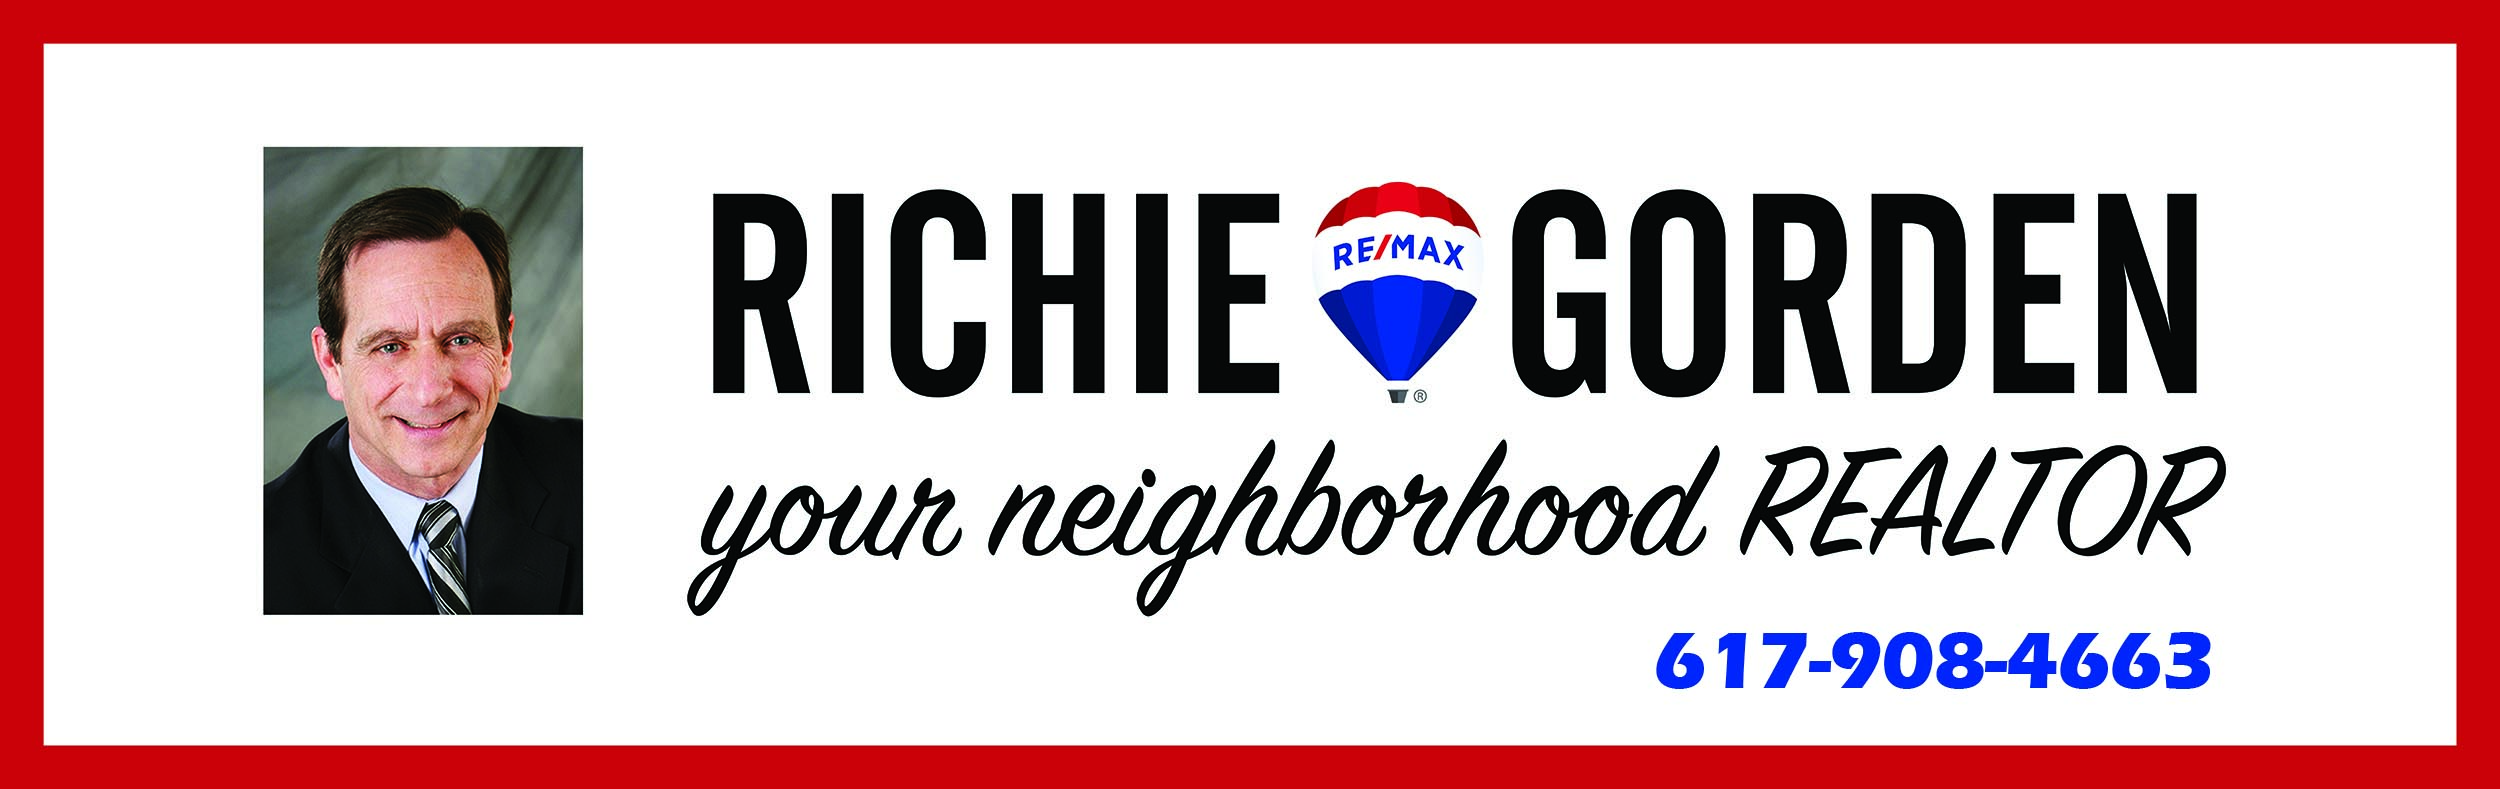 Richie Gorden, Your Neighborhood Realtor